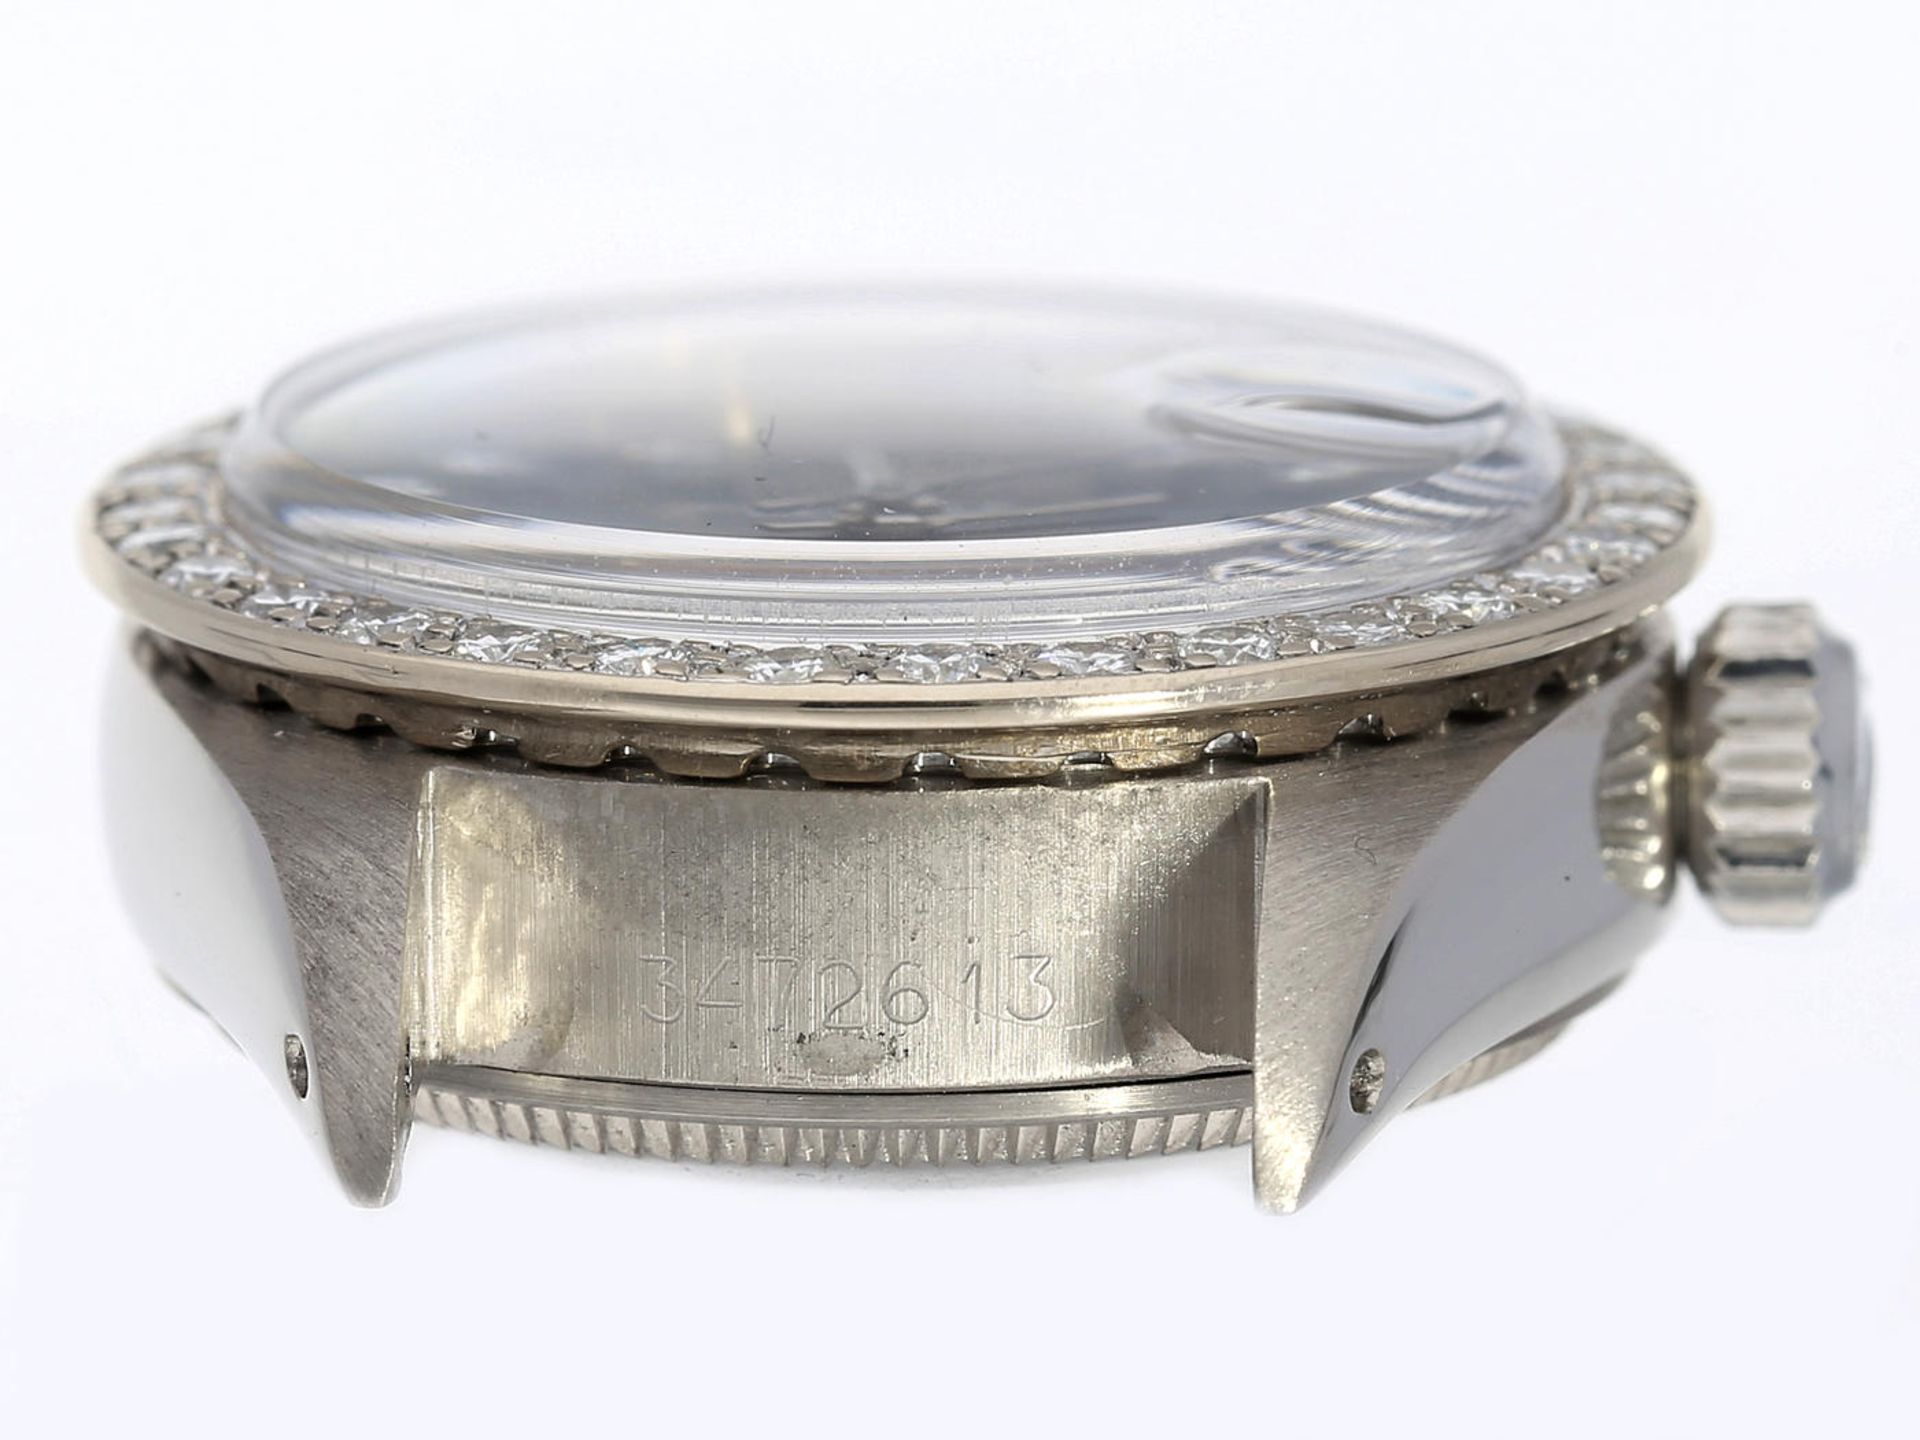 Armbanduhr: Luxusmodell einer vintage Damenuhr von Rolex von 1972, Referenz 6917 in der seltenen 18K - Bild 4 aus 7